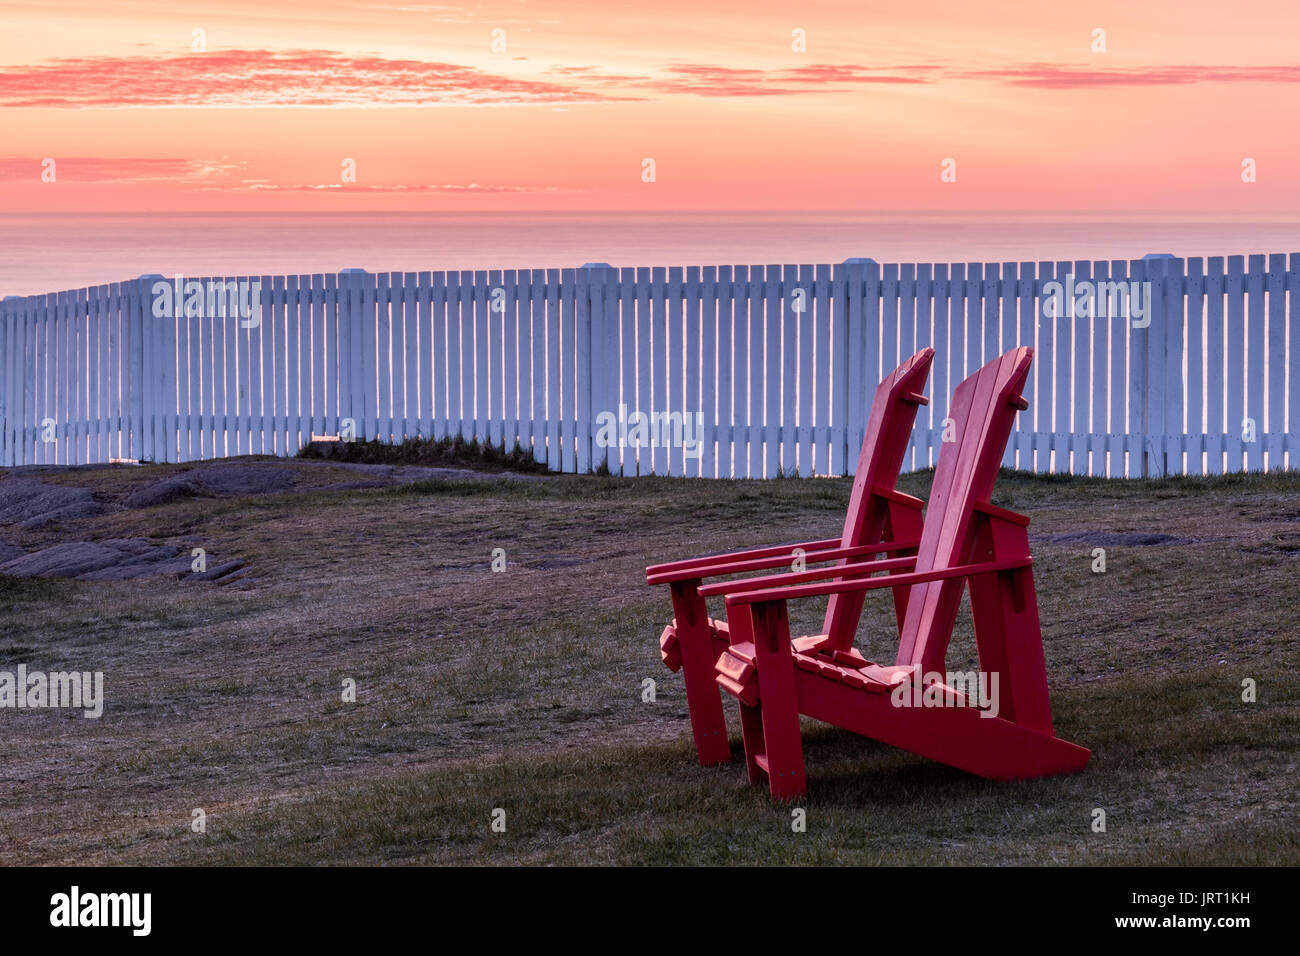 Deux chaises Muskoka rouge avec une vue sur l'océan Atlantique au lieu historique national du Canada du Cap-Spear au lever du soleil. Cape Spear, à Terre-Neuve. Banque D'Images